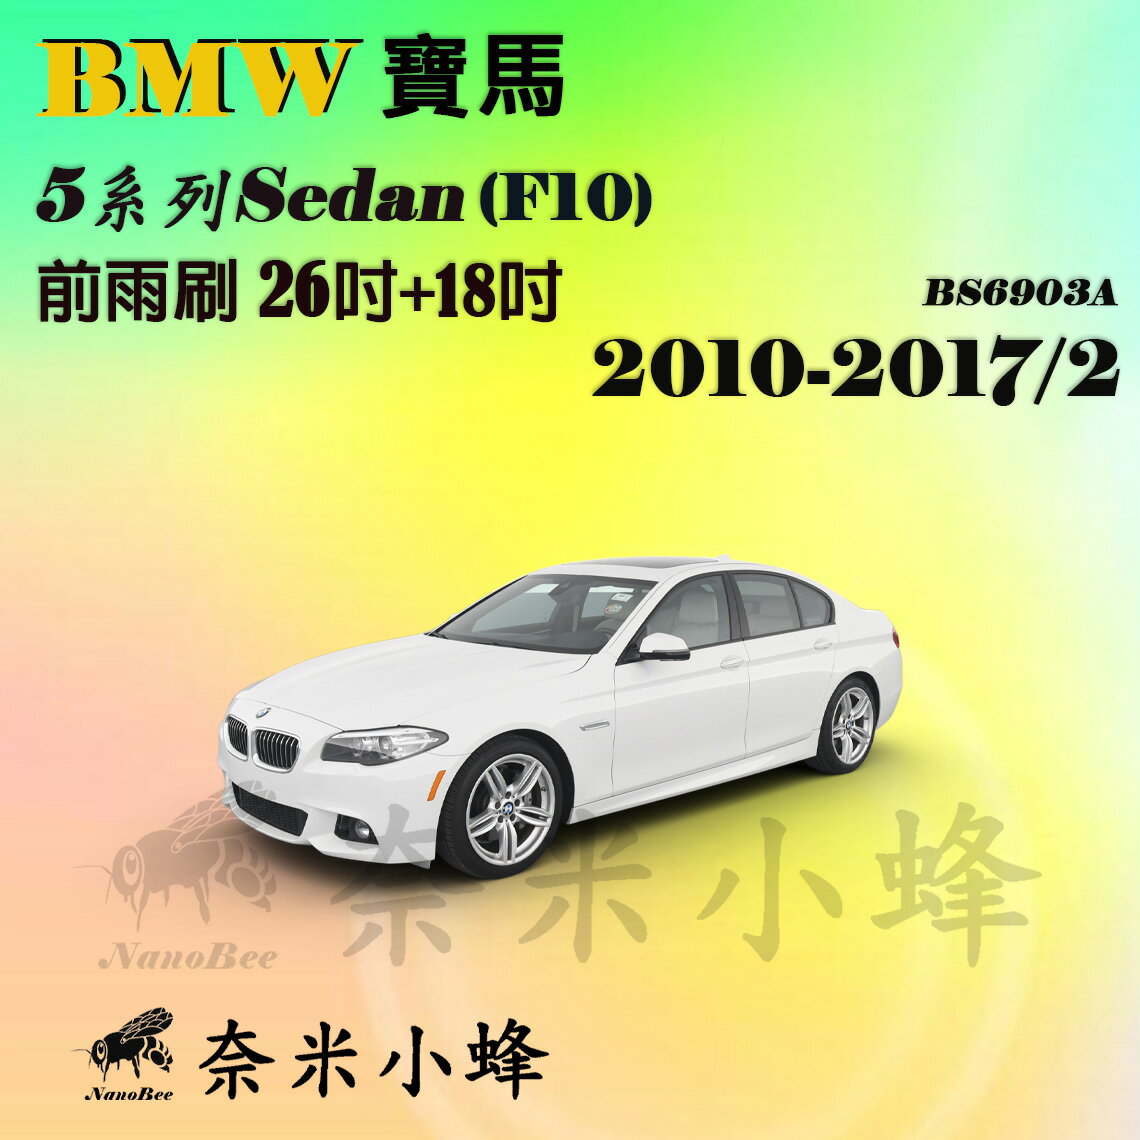 【奈米小蜂】BMW 寶馬 5系列/520i/528i/520d 2010-2017/2(F10/F11)雨刷 後雨刷 矽膠雨刷 矽膠鍍膜 軟骨雨刷